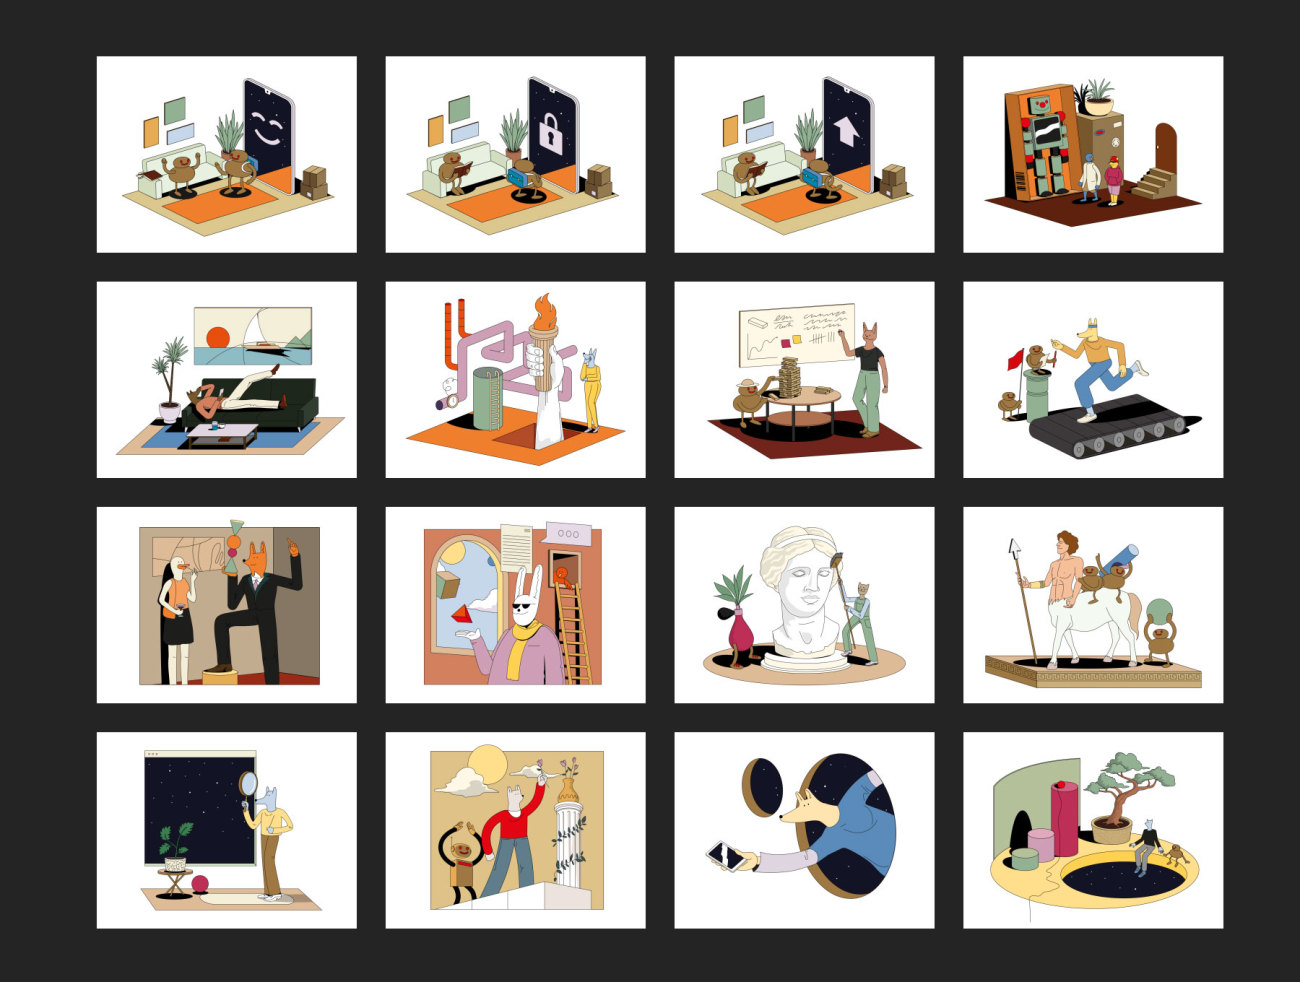 17个很棒创意脑洞大开svg HTML插画动画 Dreamwork Animations-人物插画、动效展示、动画展示、场景插画、插画、插画风格、概念创意、源码、线条手绘、趣味漫画-到位啦UI